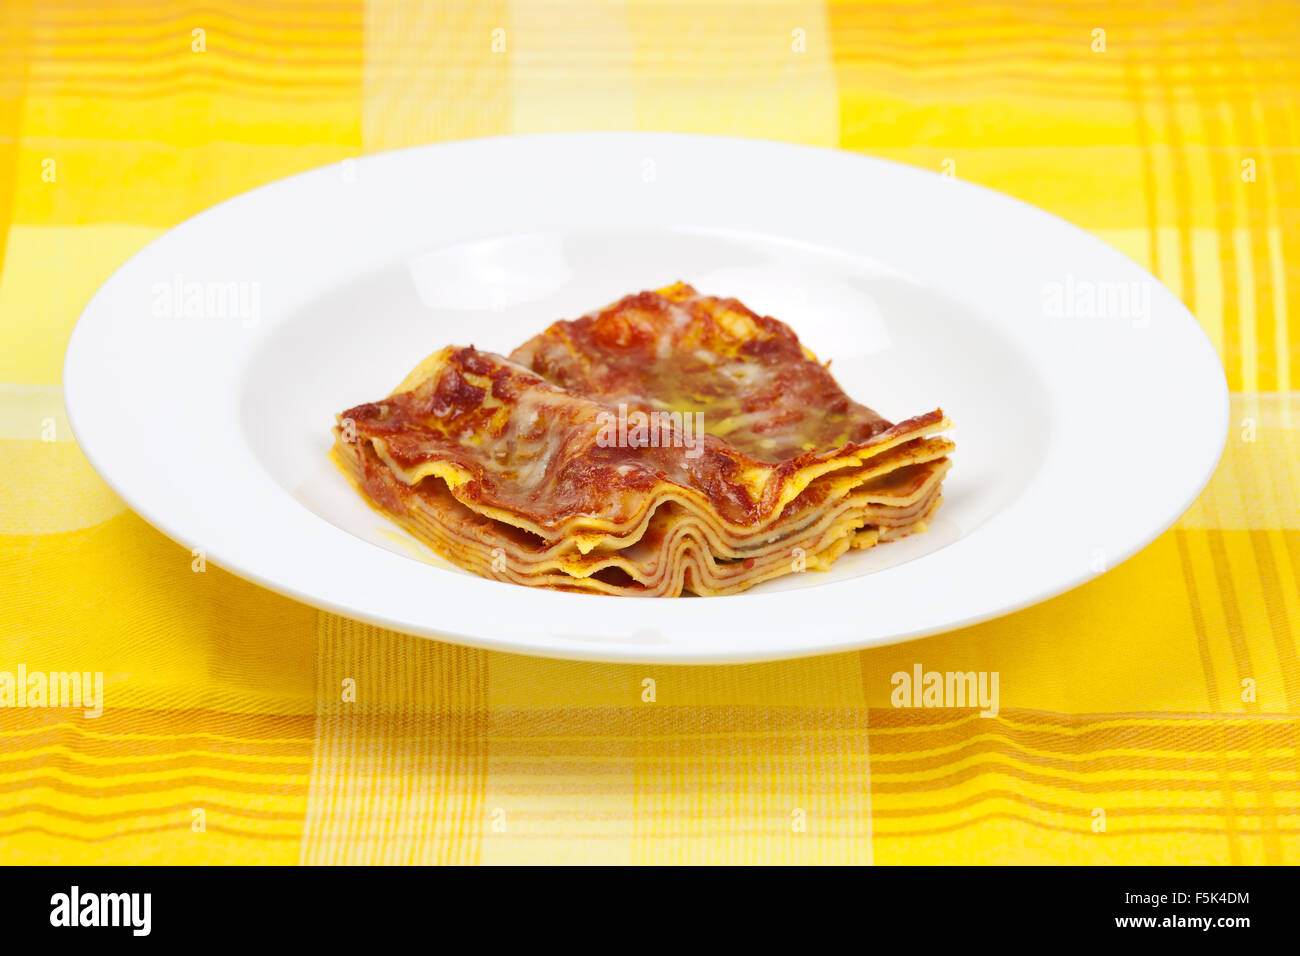 Lasagne Alla Bolognese traditionellen italienischen Rezept mit Fleisch, Tomaten, Parmesan-Käse, Olivenöl, Lasagne Nudeln auf eine Runde plat Stockfoto